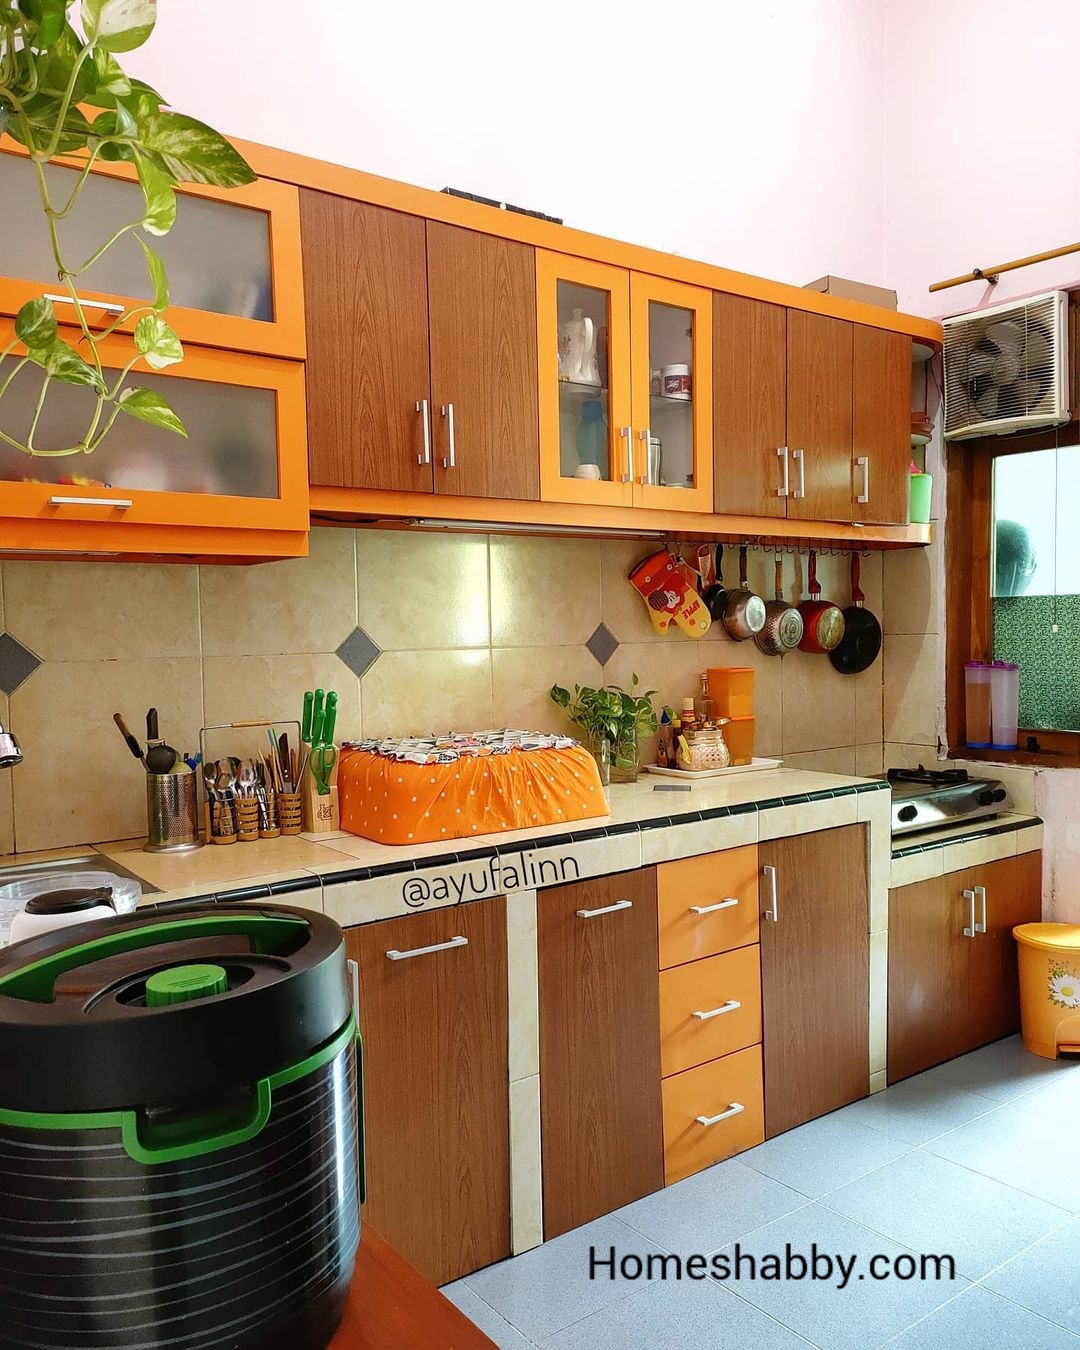 Inilah 6 Desain Kitchen Set Yang Cocok Untuk Anda Homeshabbycom Design Home Plans